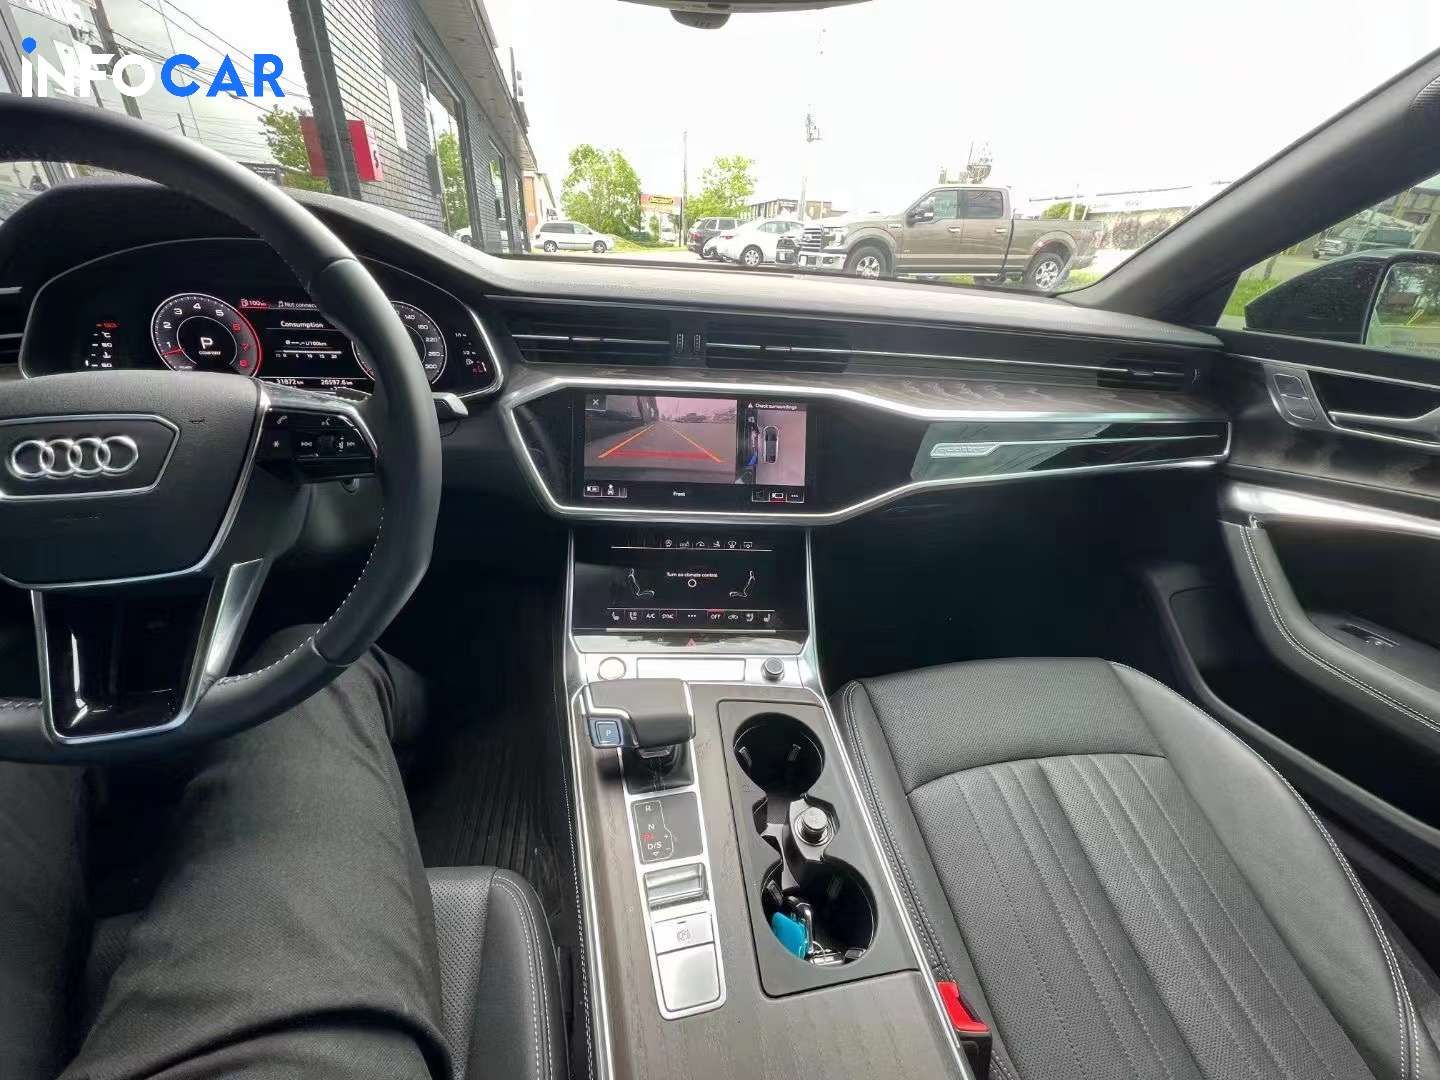 2020 Audi A7 Technik - INFOCAR - Toronto Auto Trading Platform